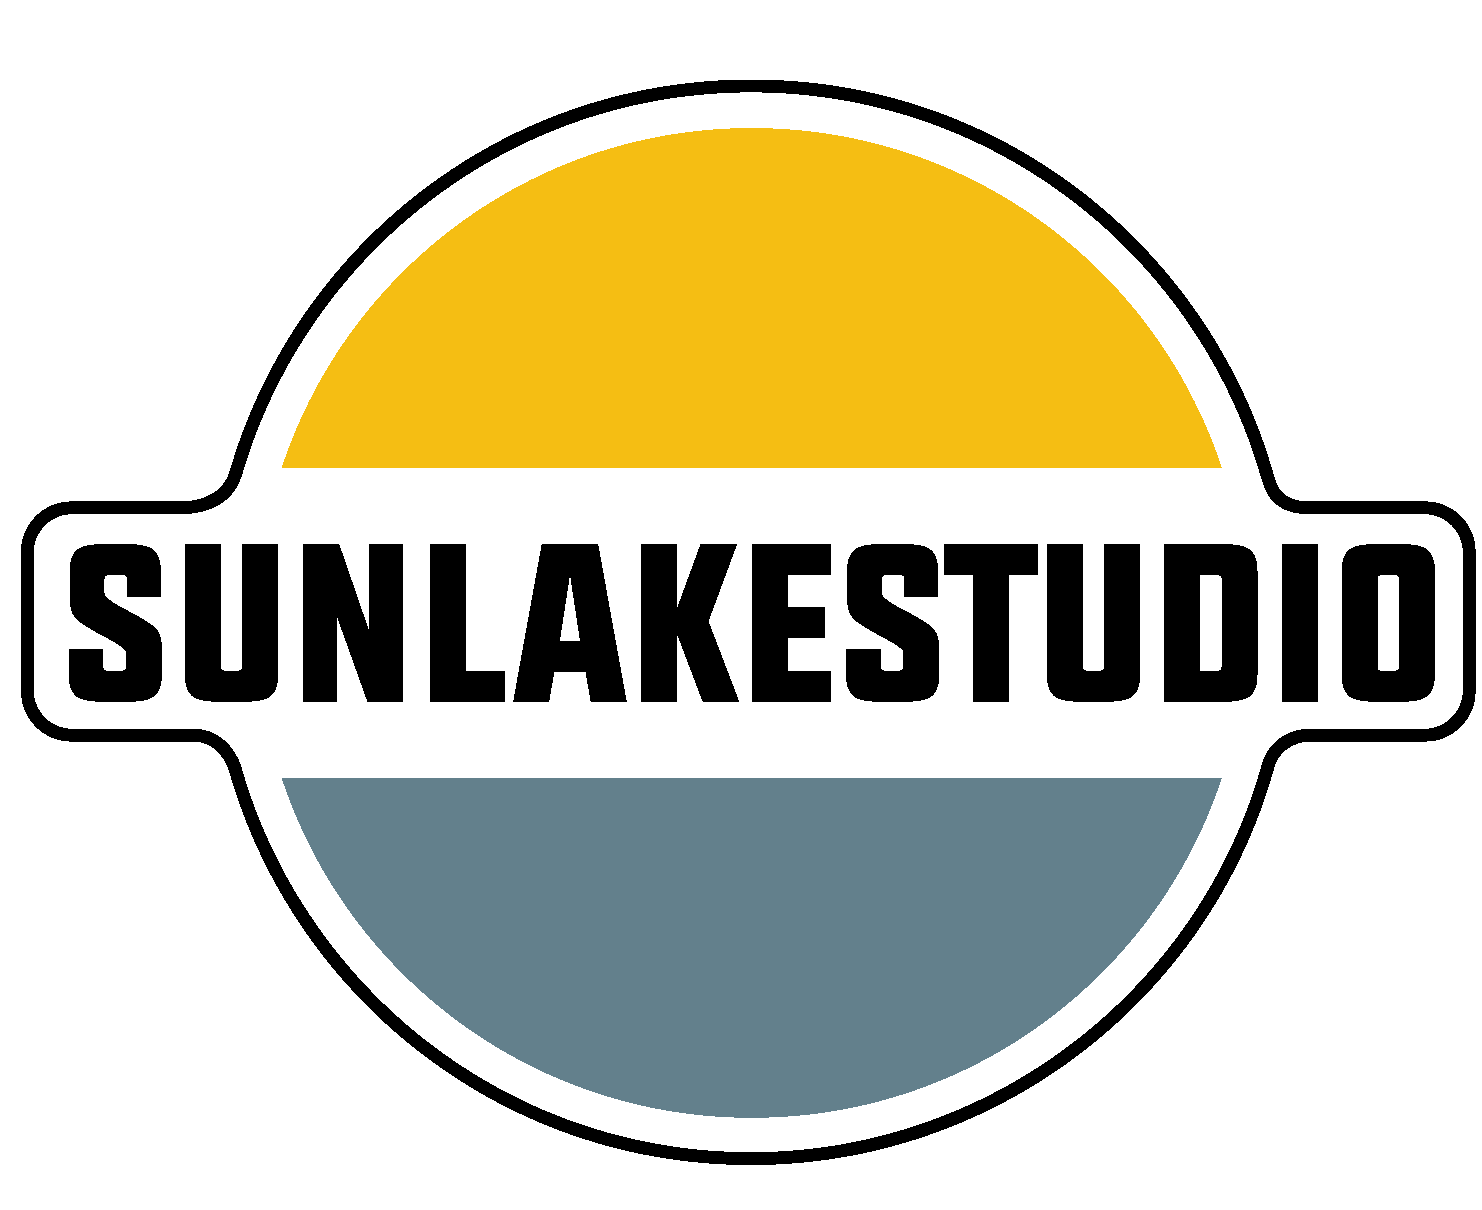 SunLakeStudio